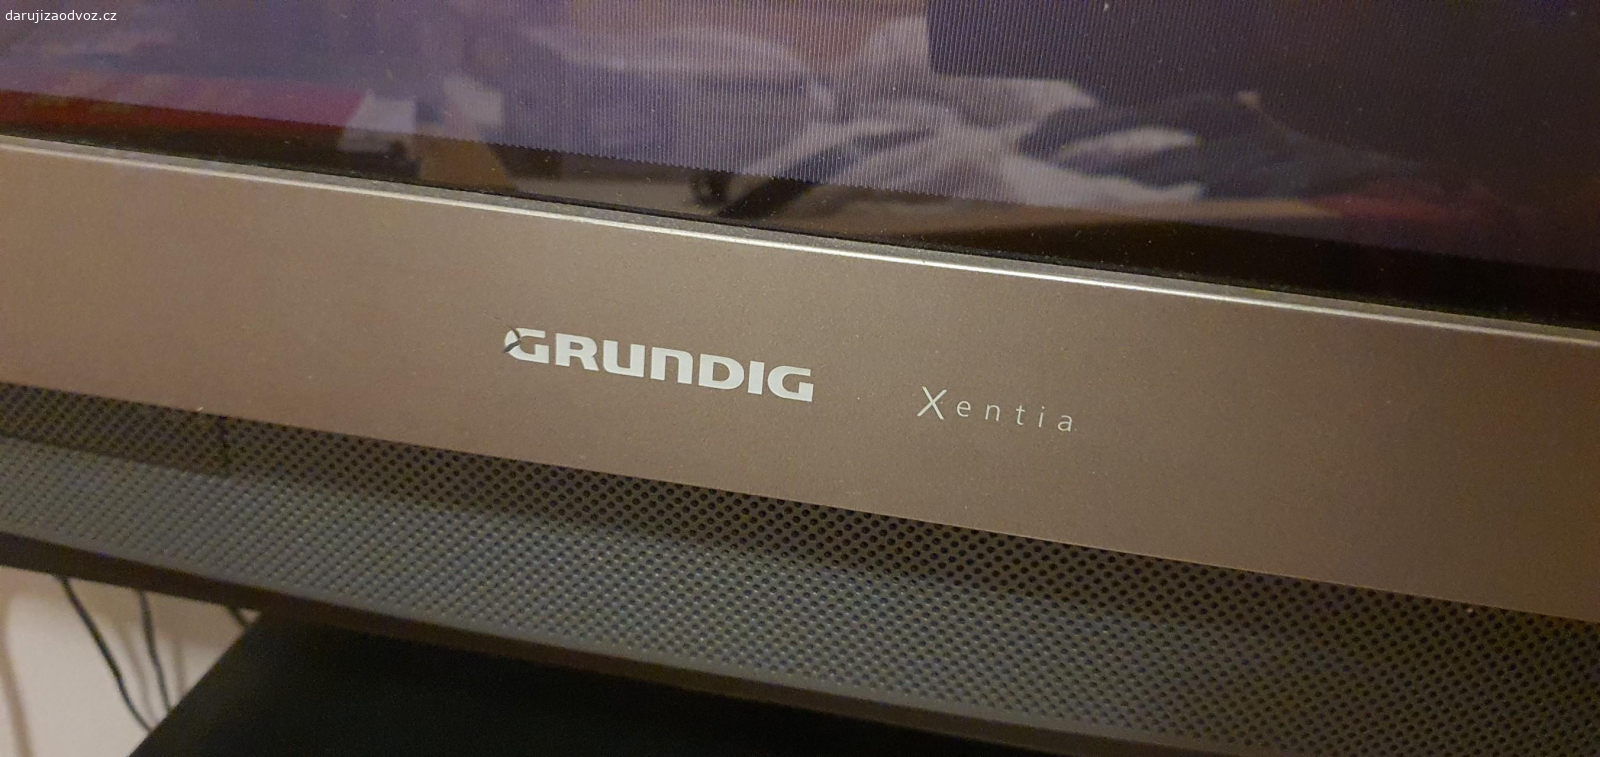 Televize Grundig Xentia 72 Flat. Plne funkcni, krasny obraz i zvuk, je mi lito vyhodit...